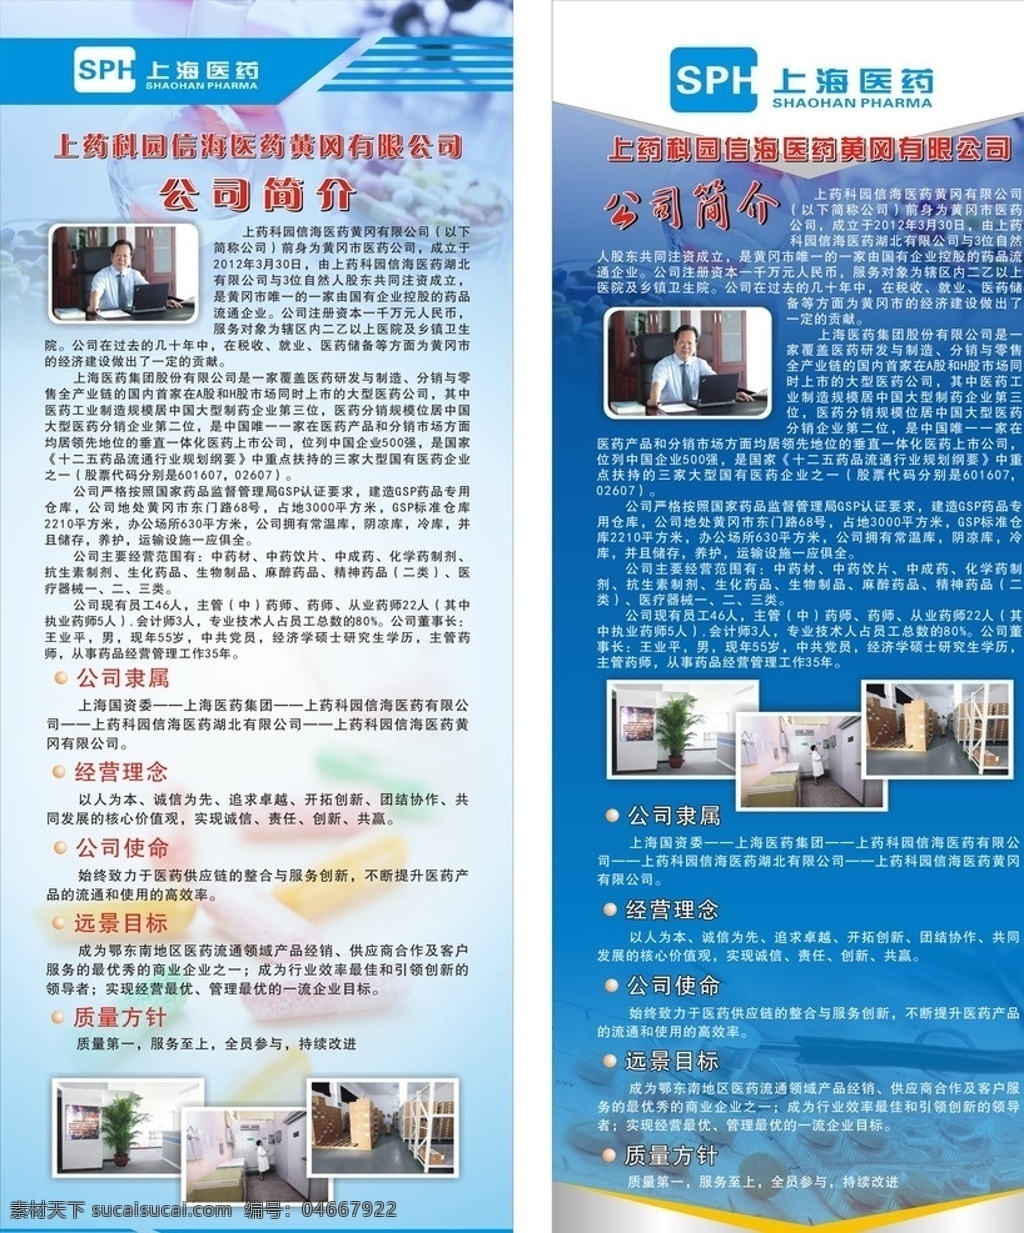 上海 医药 易拉宝 上海医药 上药集团 上药 sph 上药科园信海 公司简介 模板 蓝色 展板模板 矢量